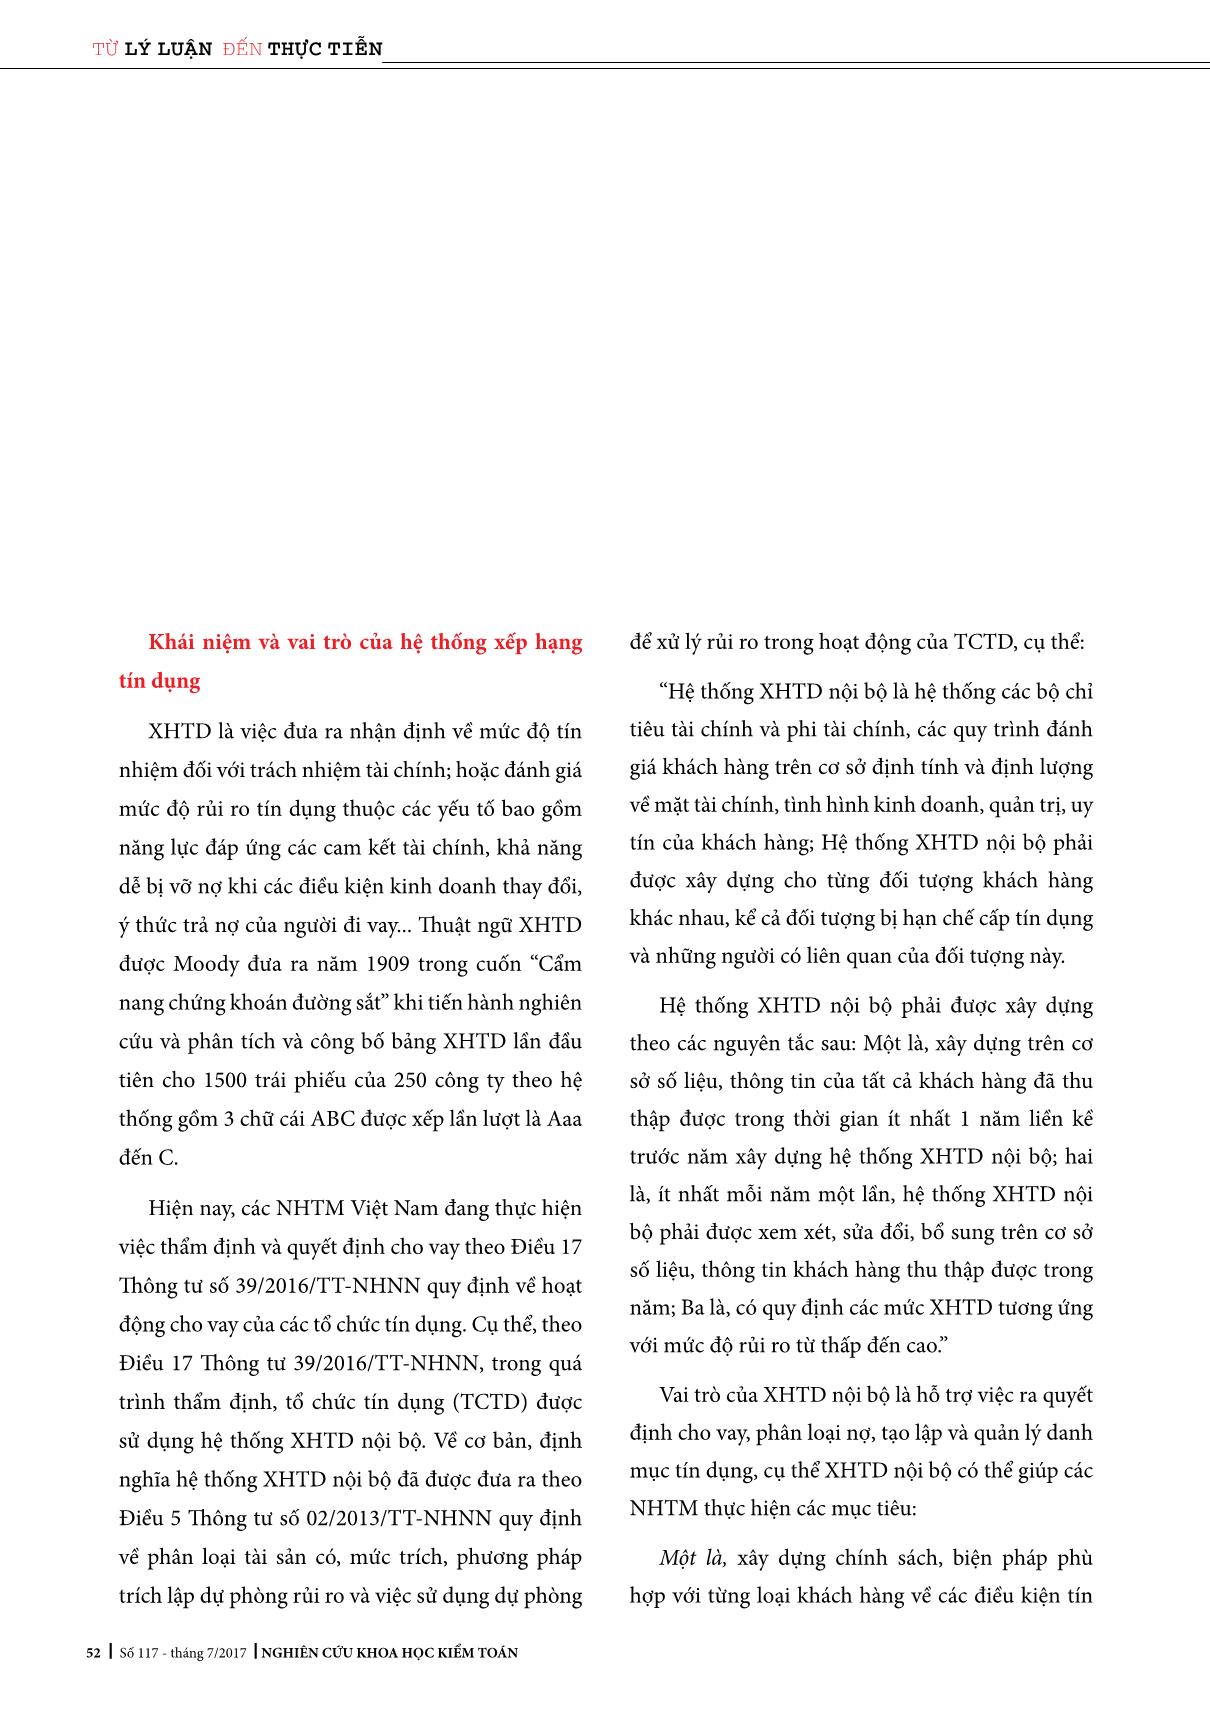 Tổng quan mô hình xếp hạng tín dụng nội bộ cho Khách hàng doanh nghiệp tại Việt Nam trang 2